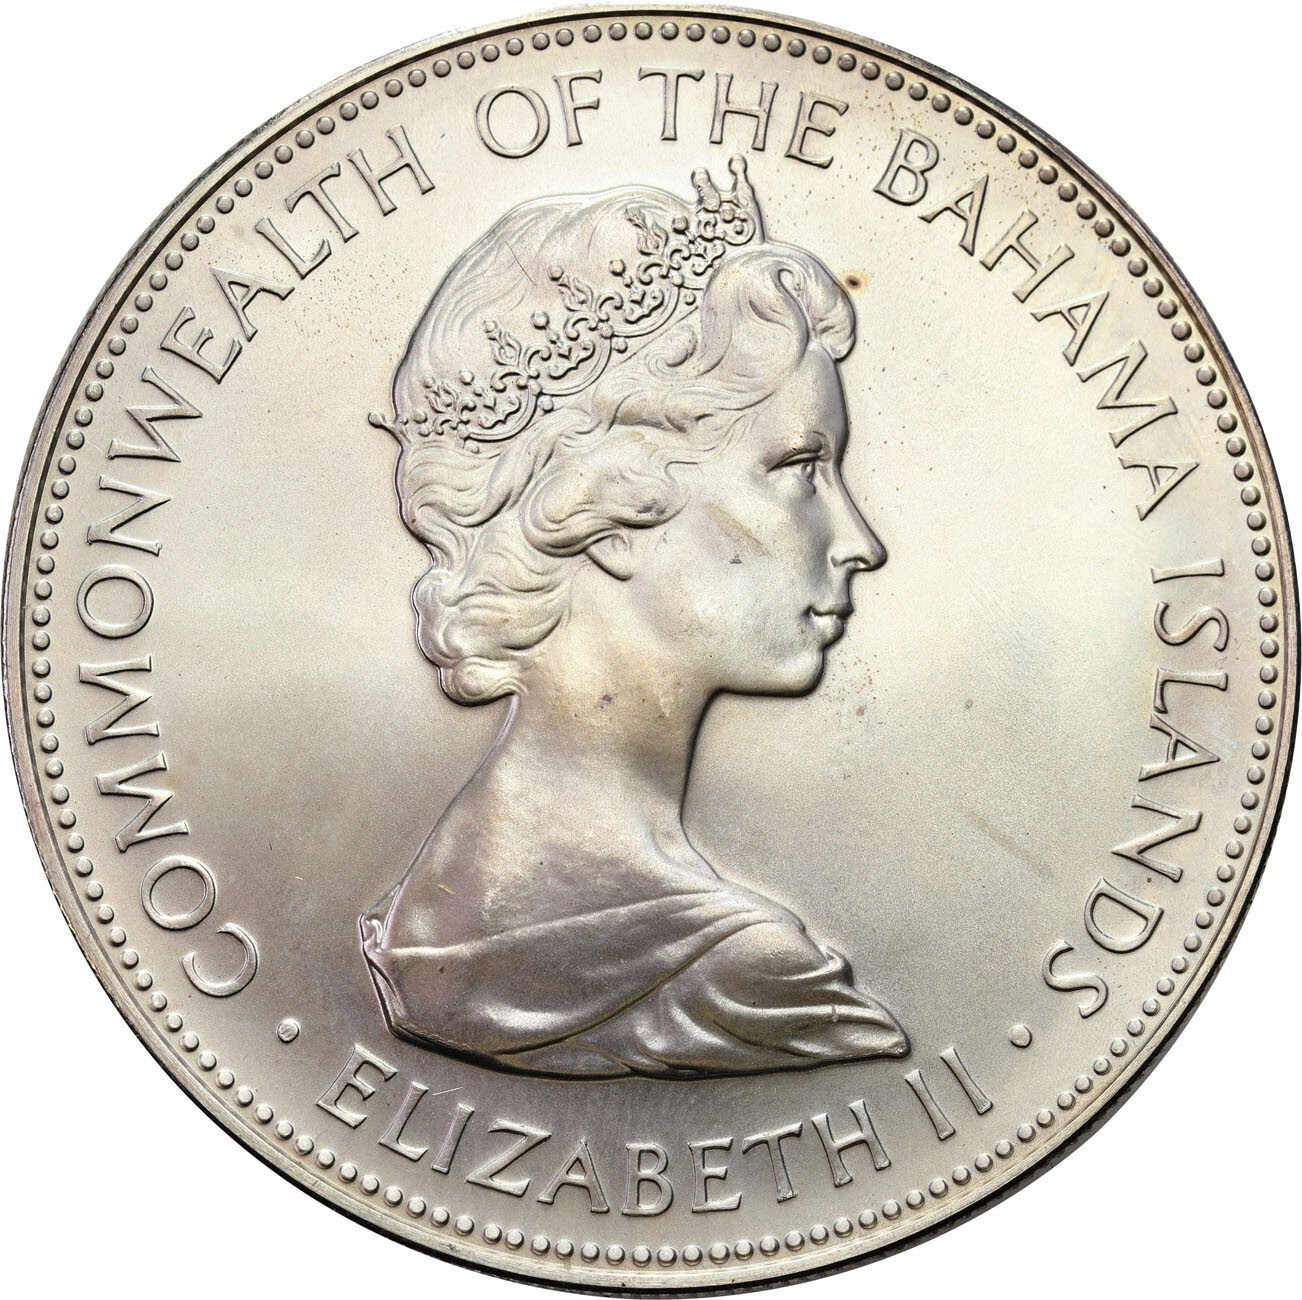  Wielka Brytania/Bahamy. 5 dolarów 1971 – PIĘKNE